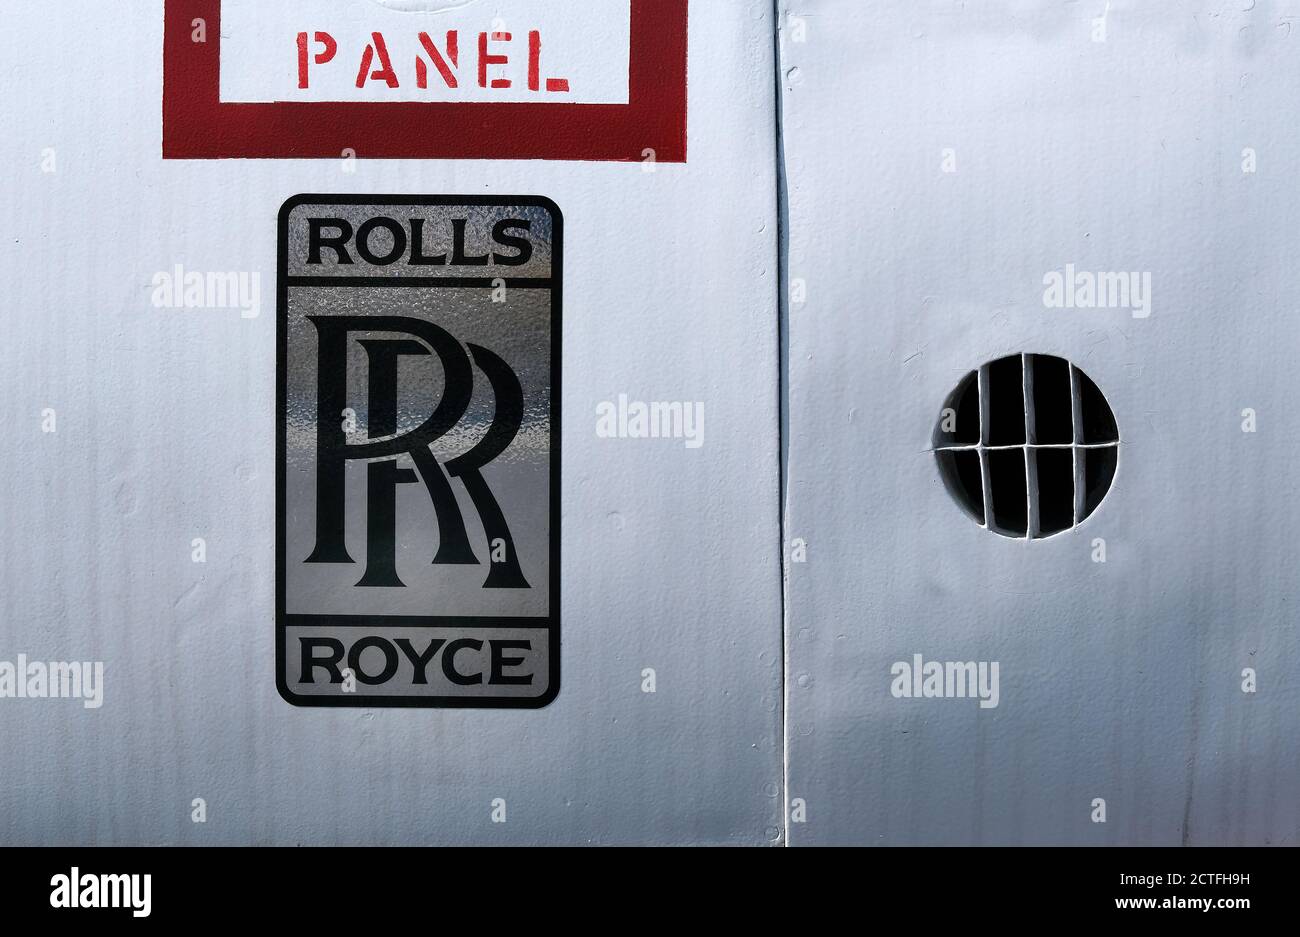 Rolls Royce logo on fast jet fuselage. Stock Photo